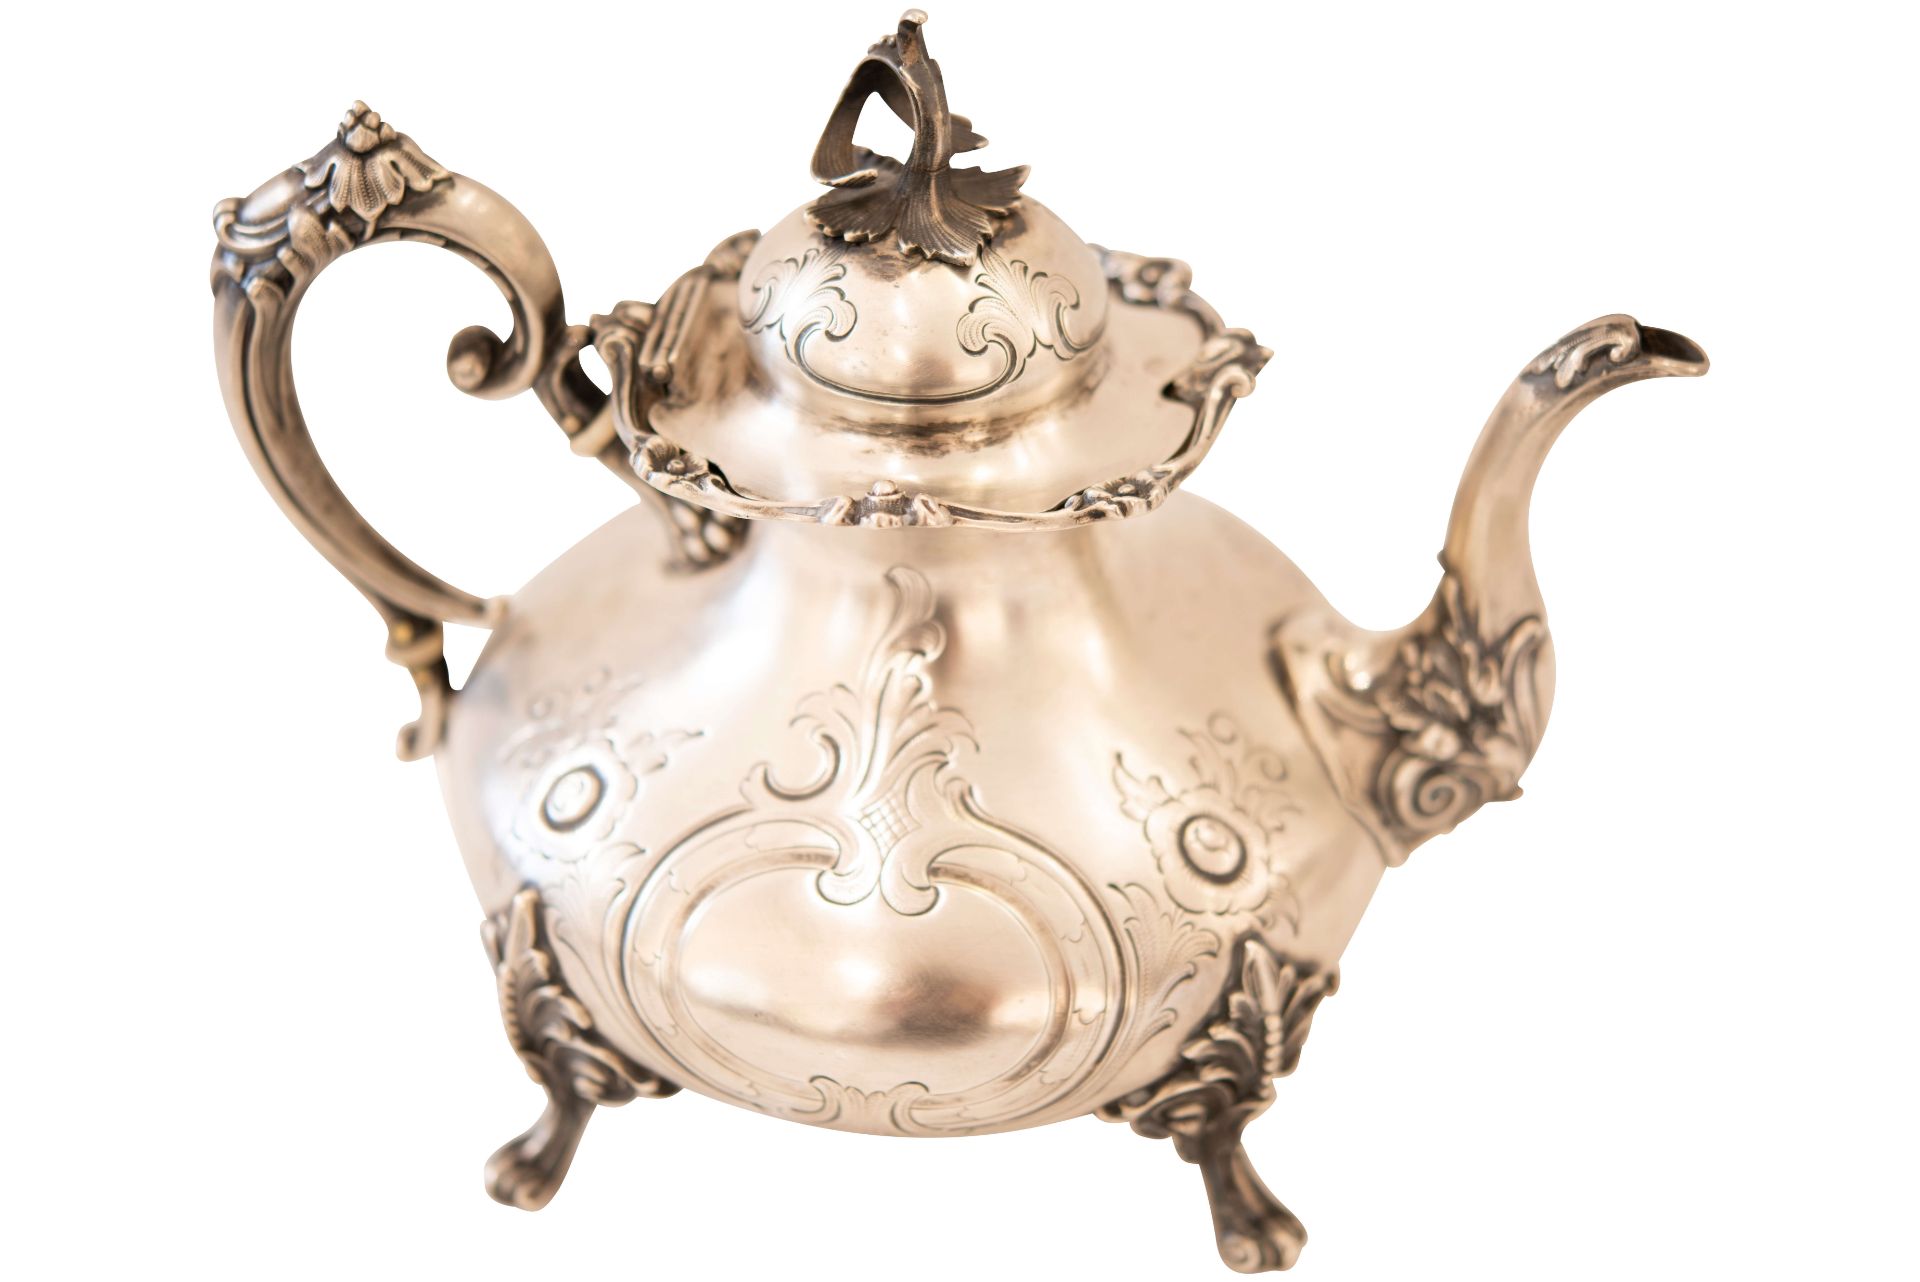 Silberteekanne mit vier Füßen |Silver Teapot with Four Feet - Image 4 of 7